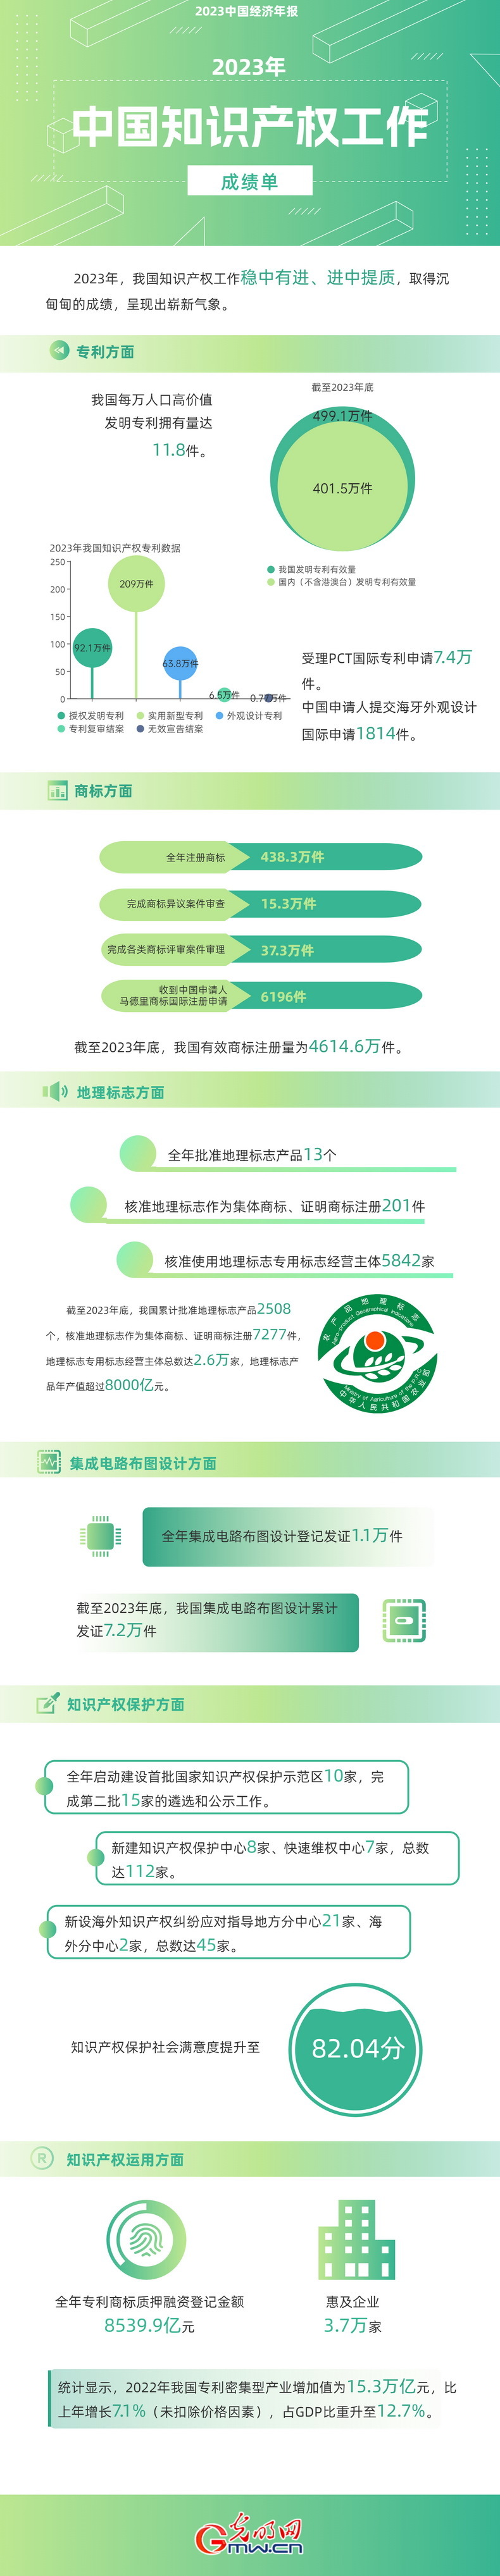 2023中国经济年报丨世界首个！我国国内有效发明专利数量突破400万件